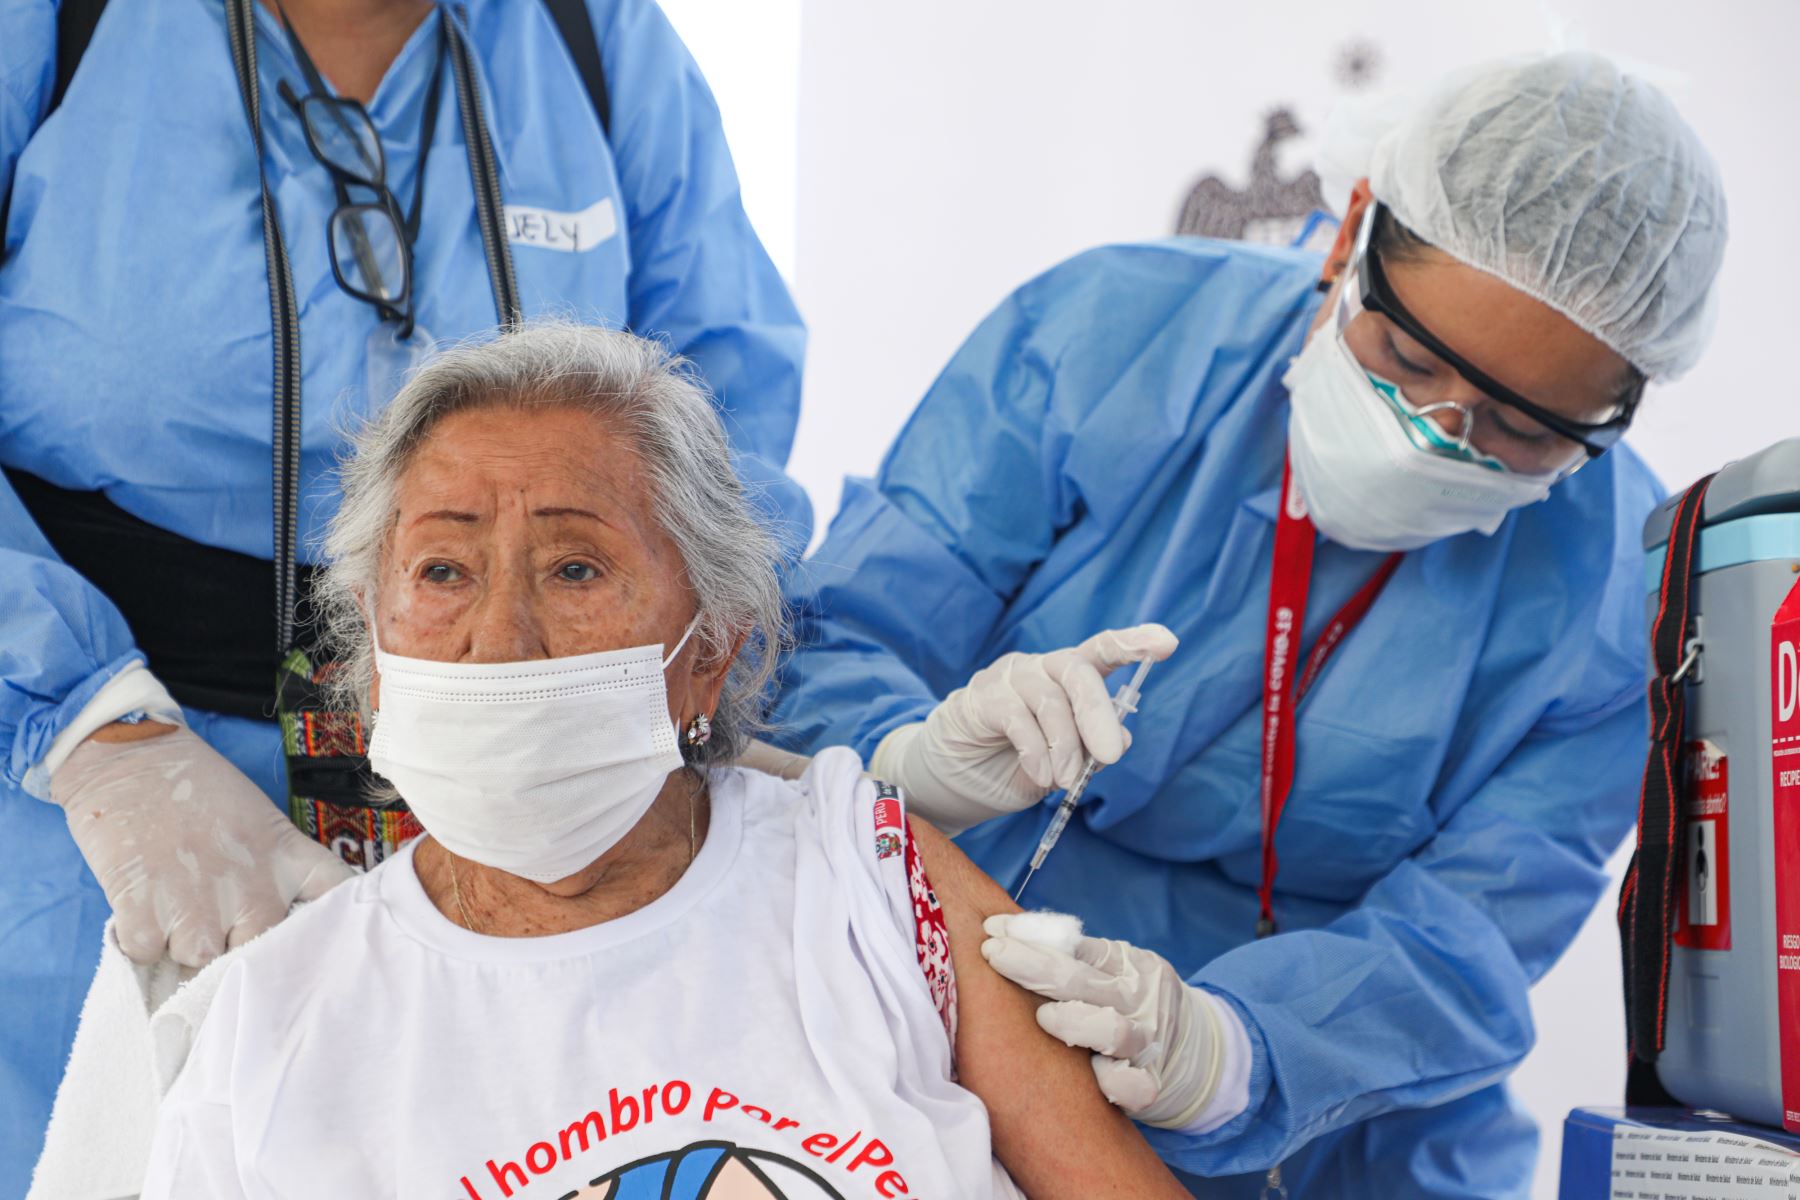 Continúa hoy en Arequipa el proceso de vacunación anticovid-19 para adultos mayores, afiliados al Seguro Integra de Salud (SIS) o que carecen de seguro, informó el Comité Permanente de Inmunizaciones de la Gerencia Regional de Salud, que en la víspera tomo el acuerdo. Foto: ANDINA/difusión.